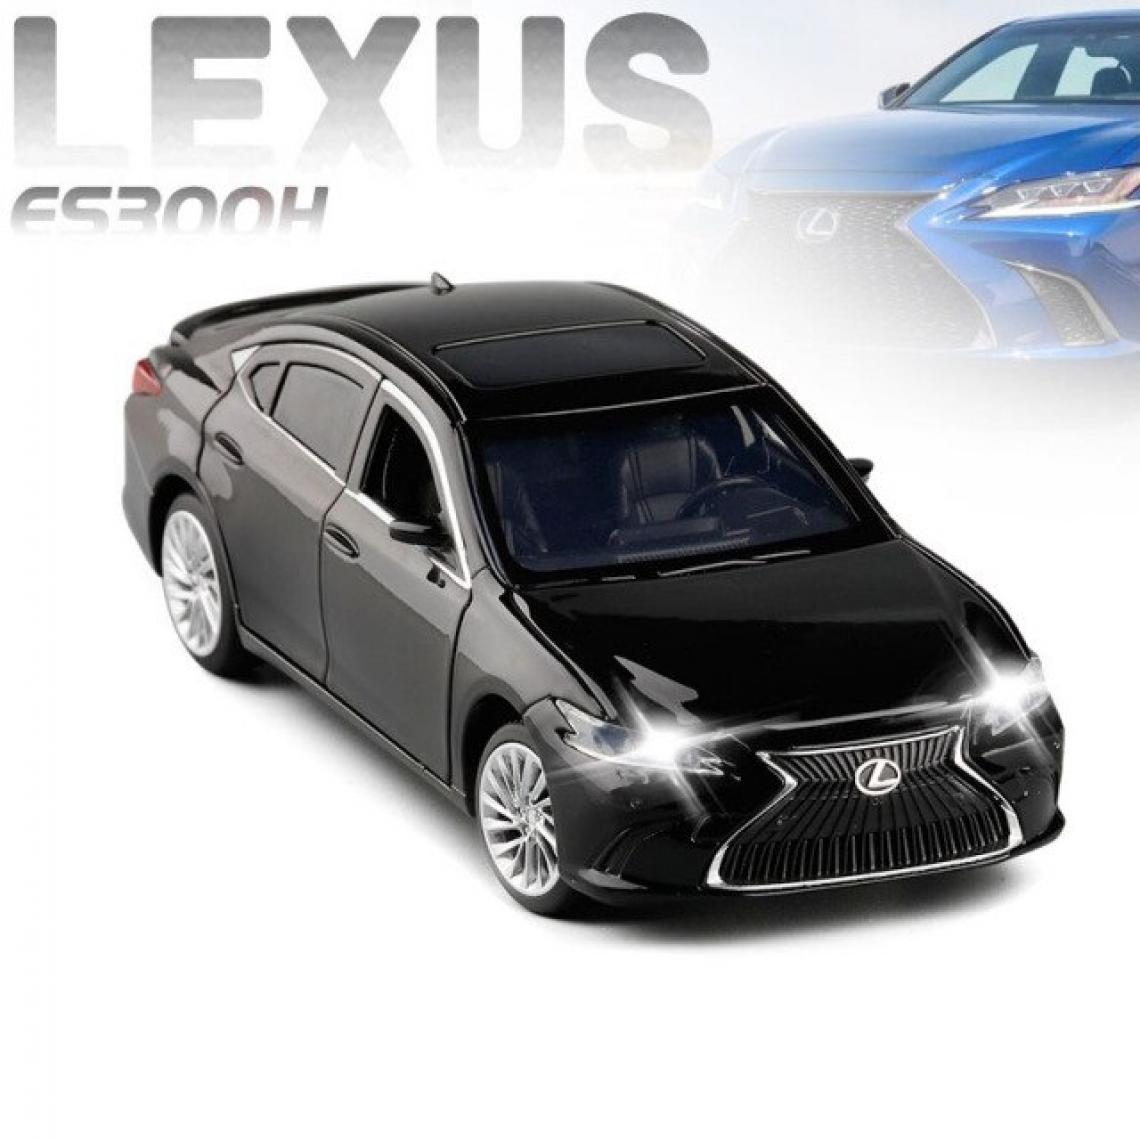 Universal - 1: 32 Lexus ES300H alliage pull back modèle moulé sous pression métal jouet voiture avec lumière acoustique 6 portes ouvertes cadeaux pour enfants Livraison gratuite |(Le noir) - Voitures